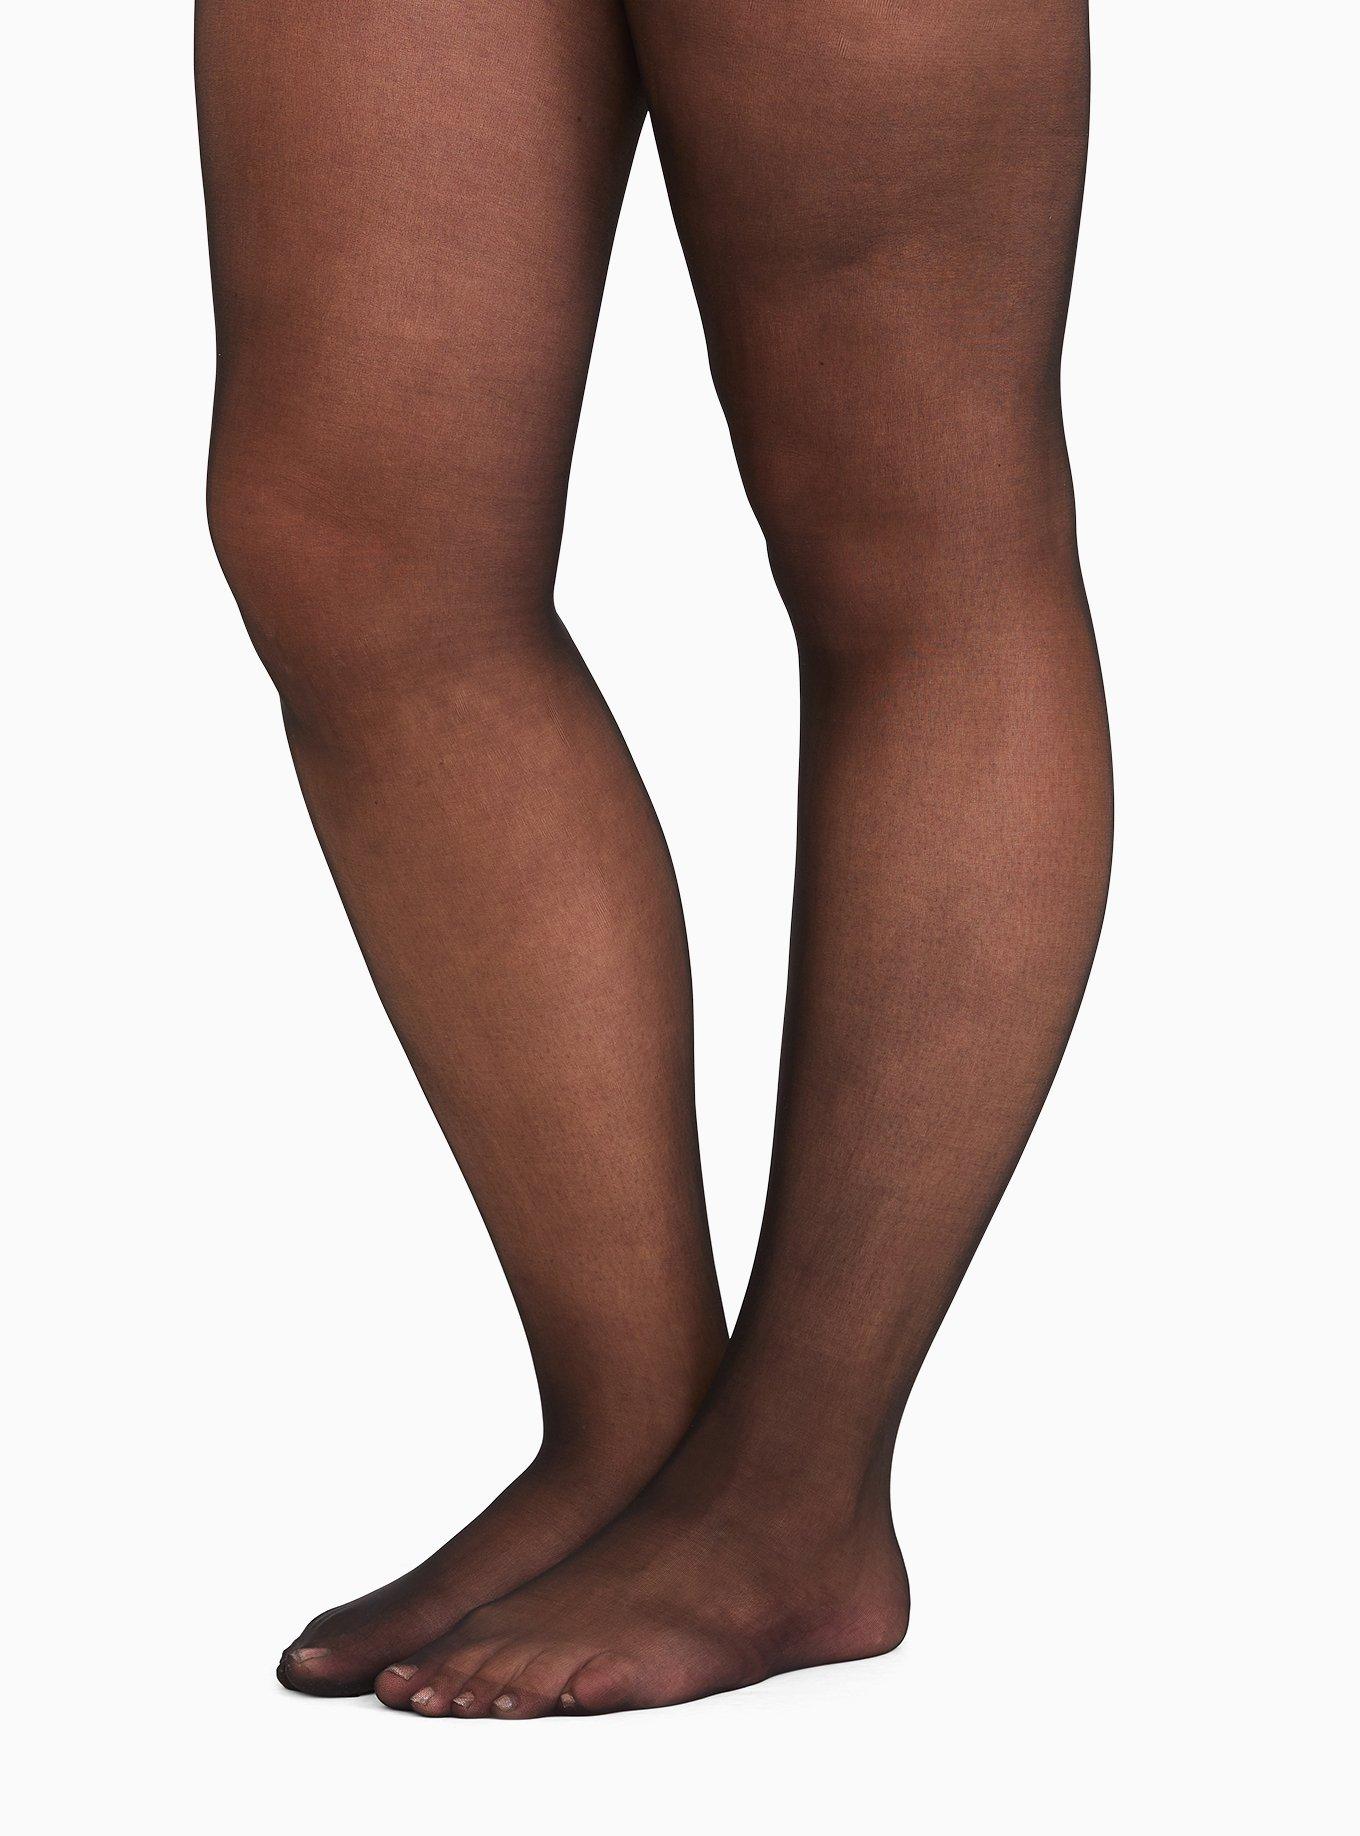 Sheer Stockings - Buy Sheer Stockings online in India